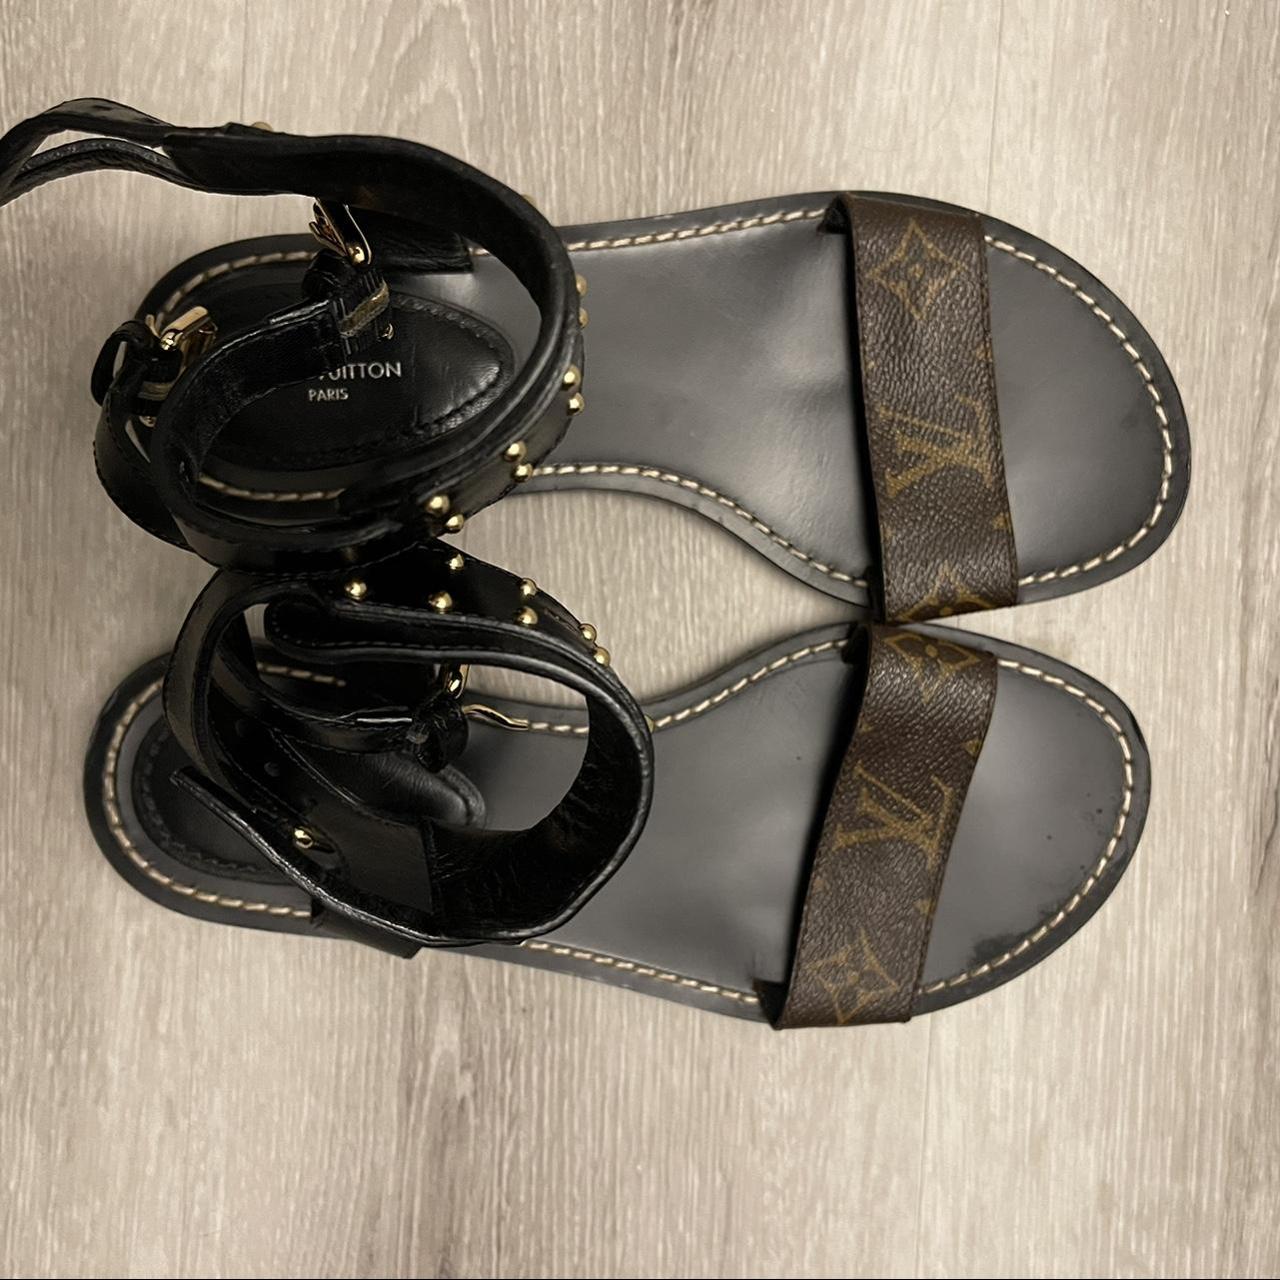 vuitton nomad sandals